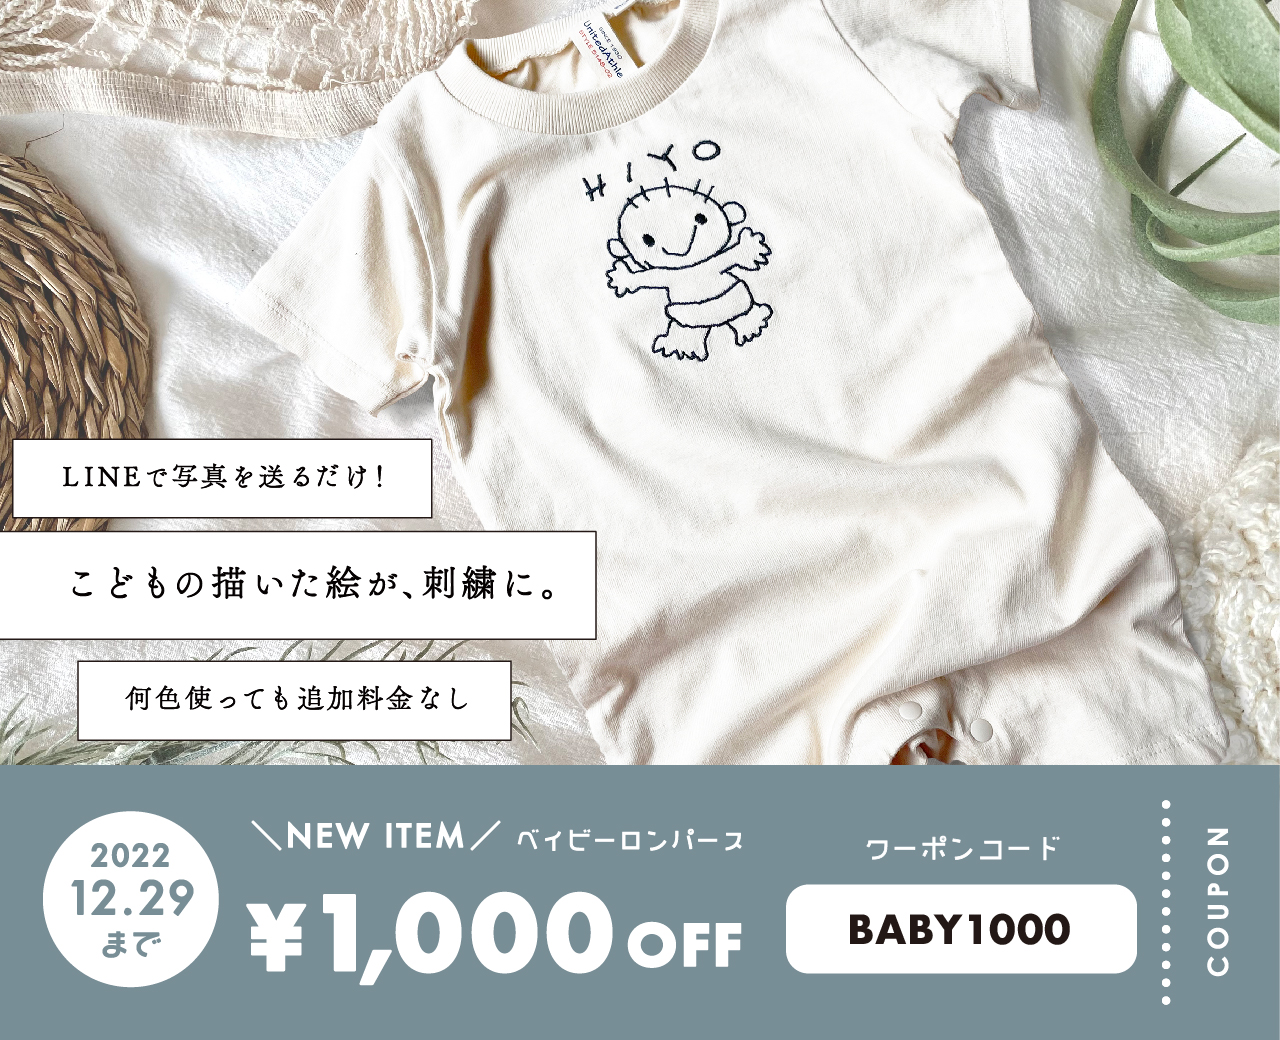 ＼NEW ITEM ロンパース ¥1,000 OFFクーポン／